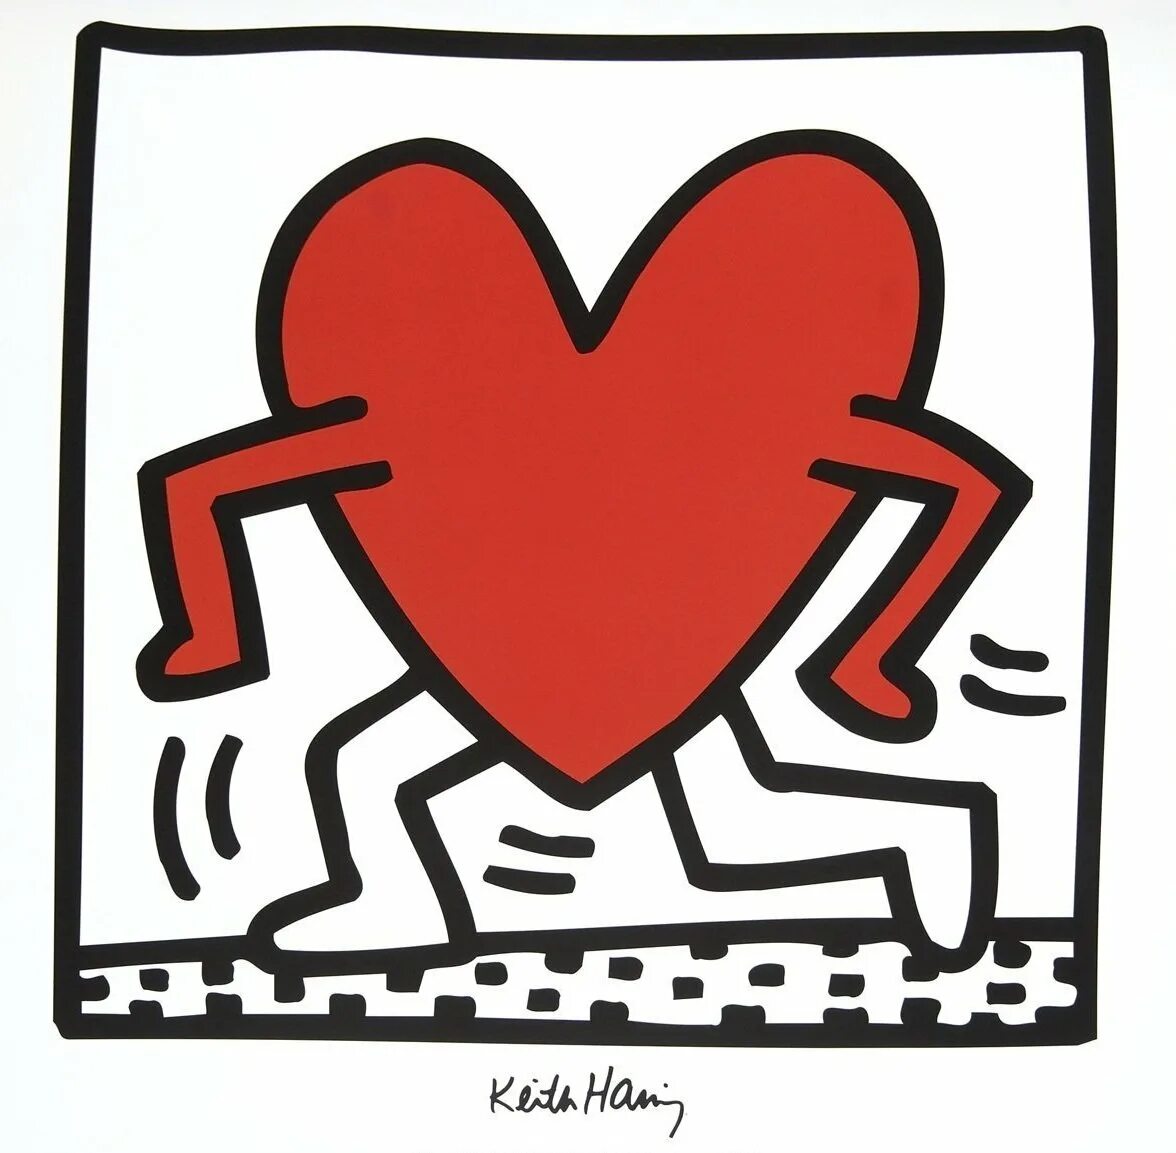 Сердце убегает. Кит Харинг сердце. Keith Haring художник. Кит Харинг untitled 1988. Кит Харинг картины с сердцем.